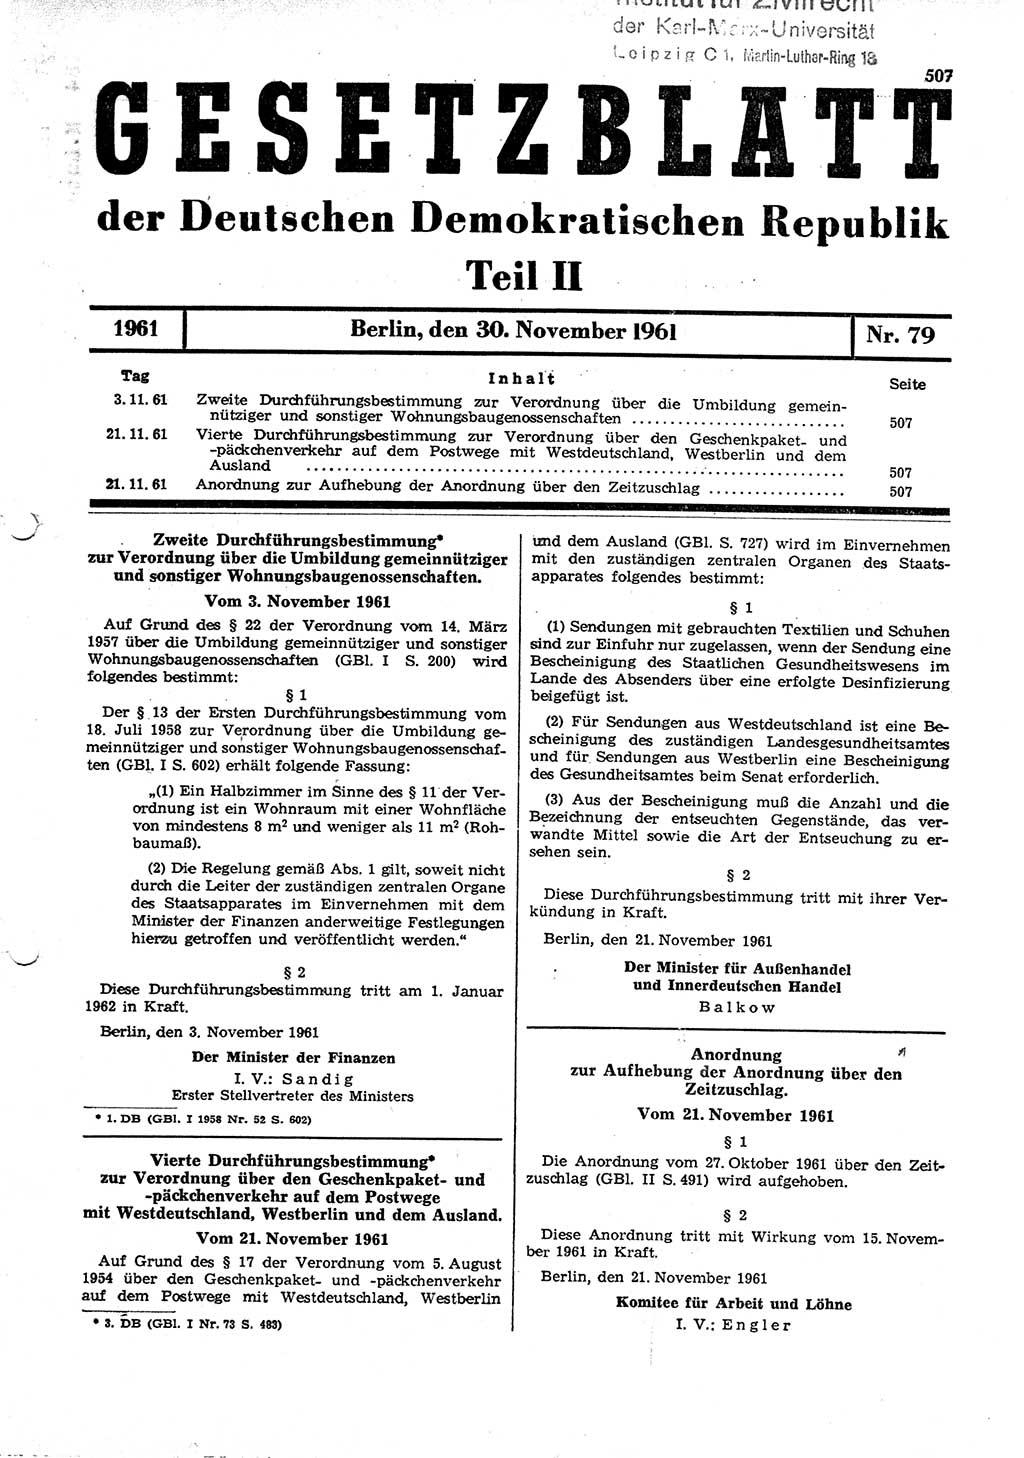 Gesetzblatt (GBl.) der Deutschen Demokratischen Republik (DDR) Teil ⅠⅠ 1961, Seite 507 (GBl. DDR ⅠⅠ 1961, S. 507)